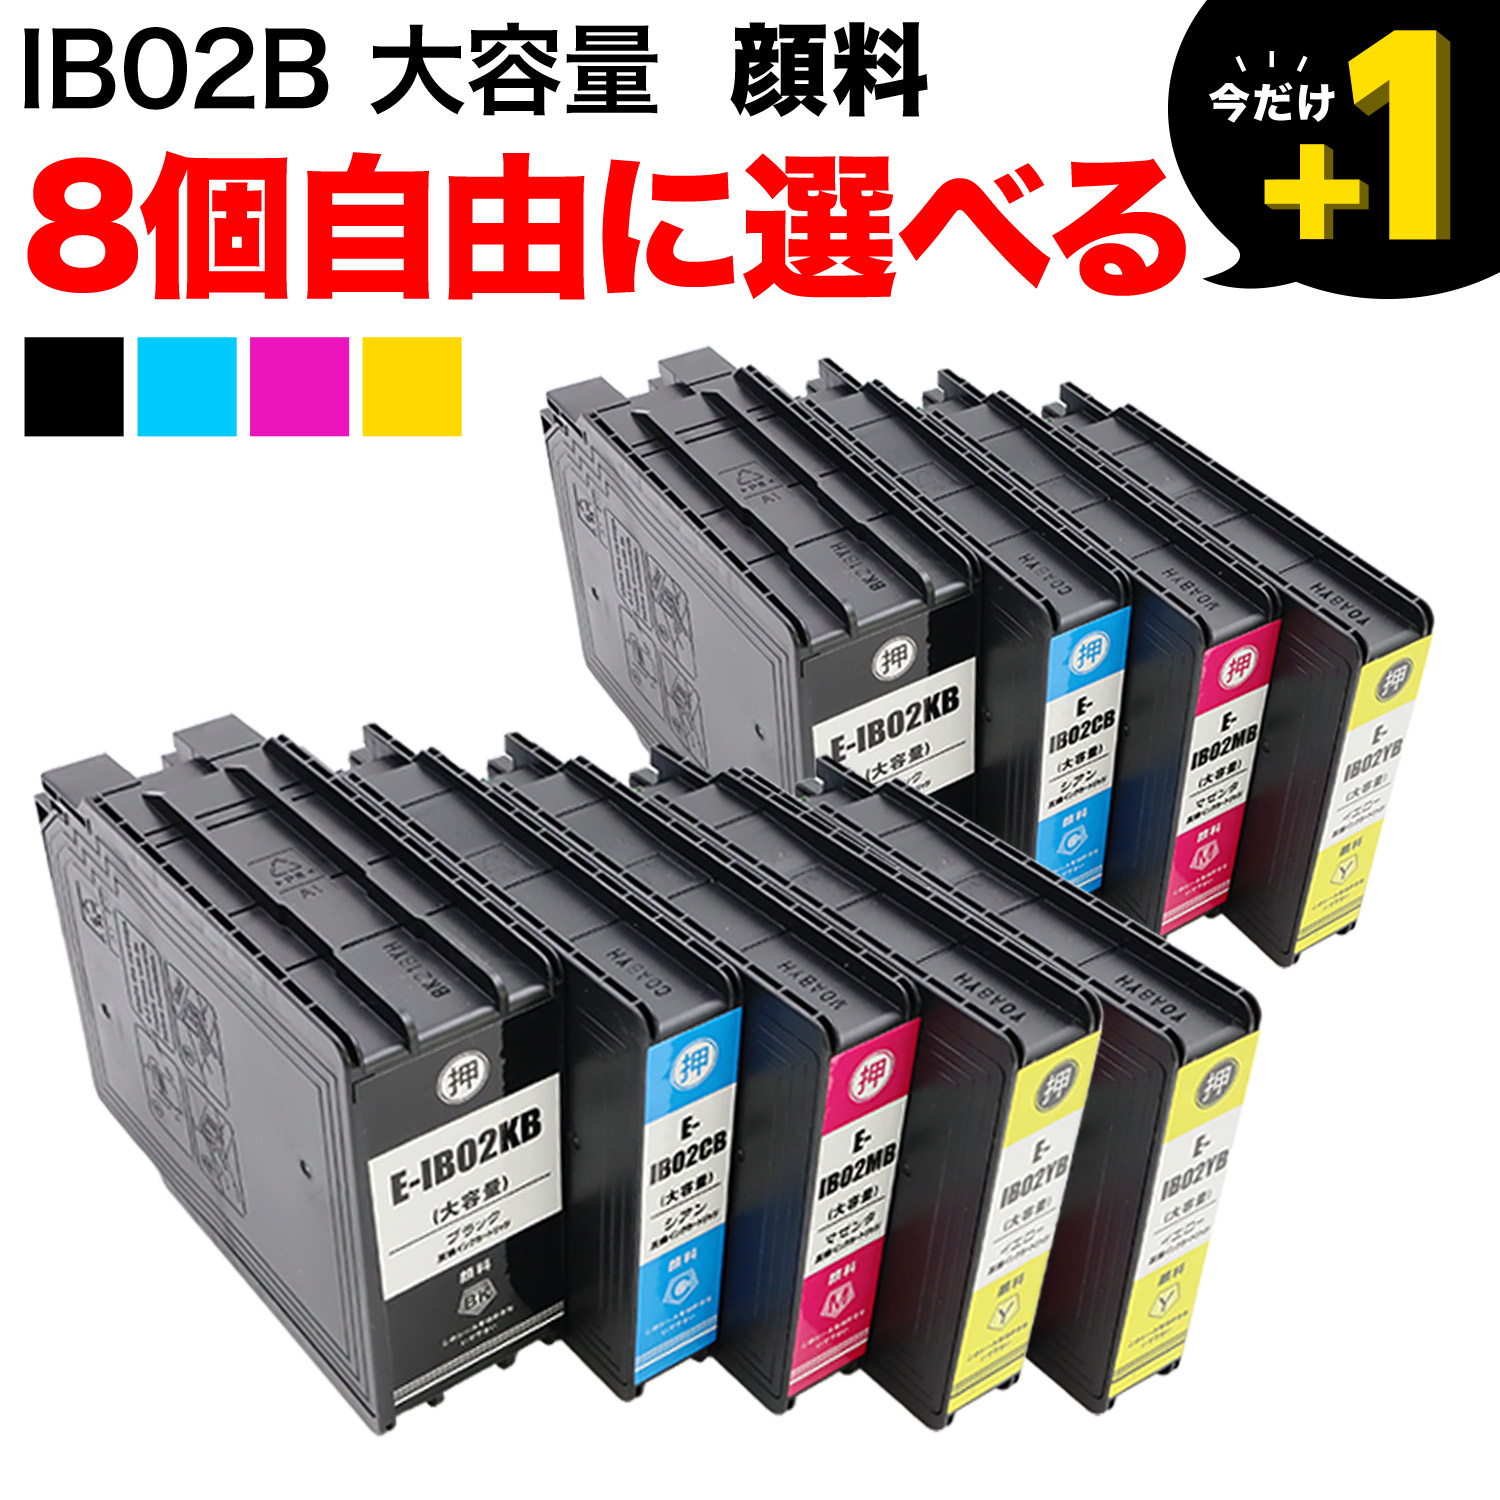 エプソン用 IB02B互換インク 顔料 大容量 自由選択8個セット フリー